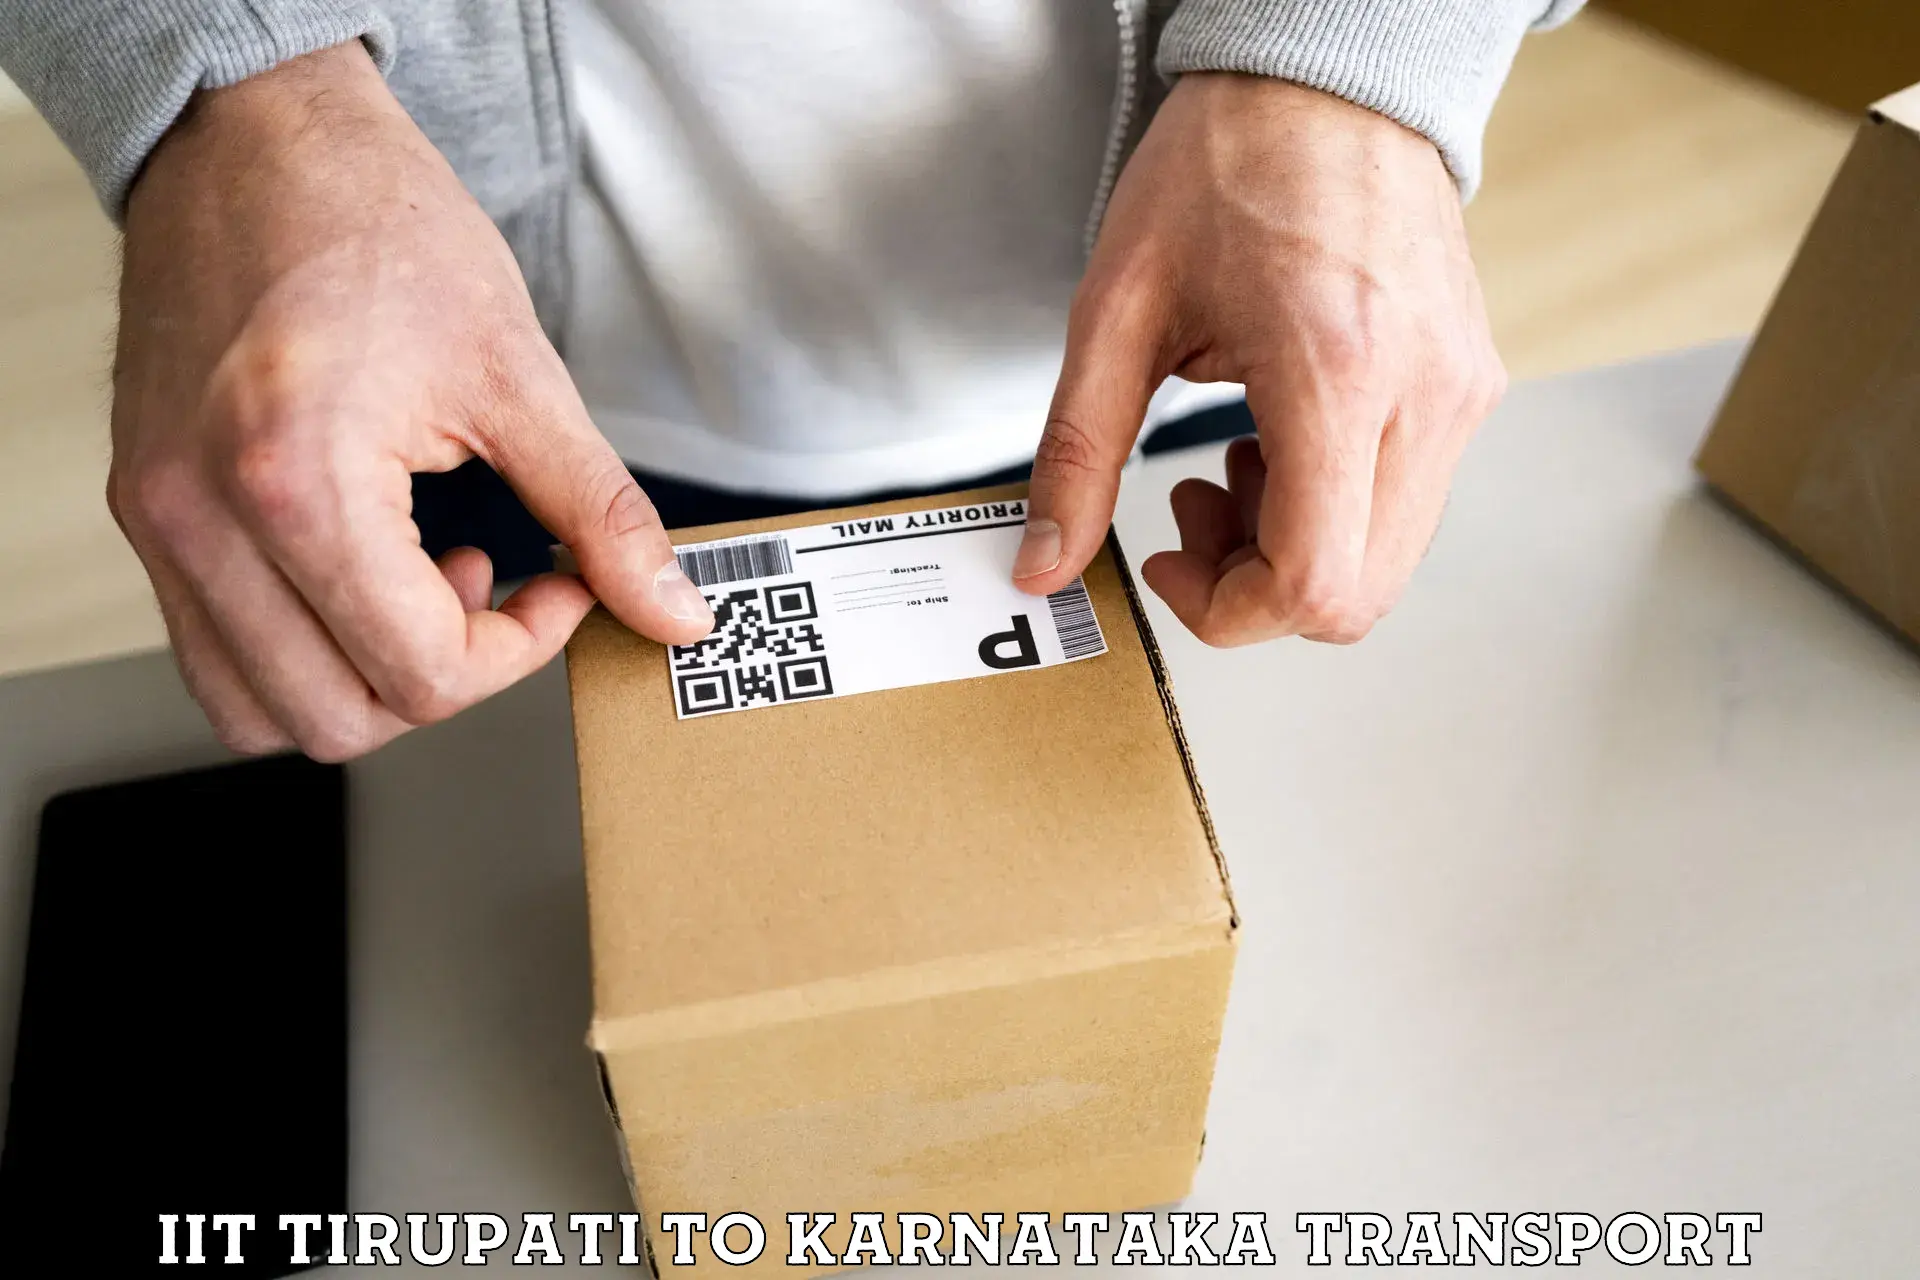 Lorry transport service IIT Tirupati to Toranagallu